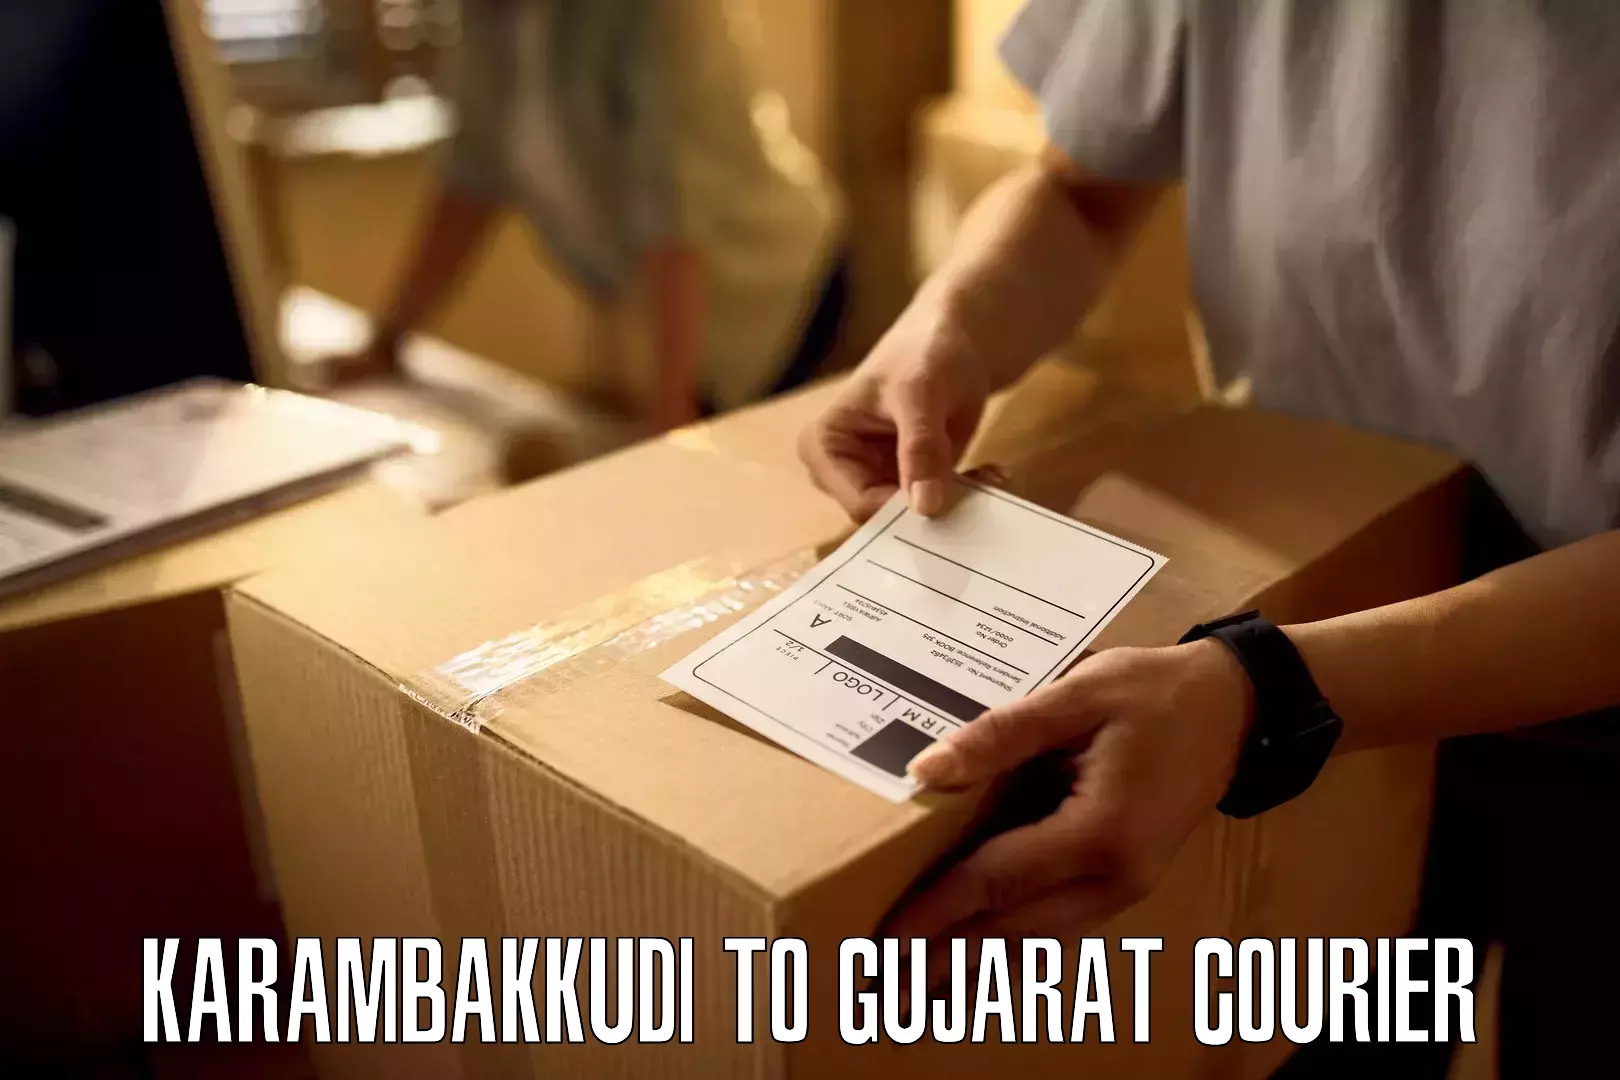 Custom courier packaging Karambakkudi to Junagadh